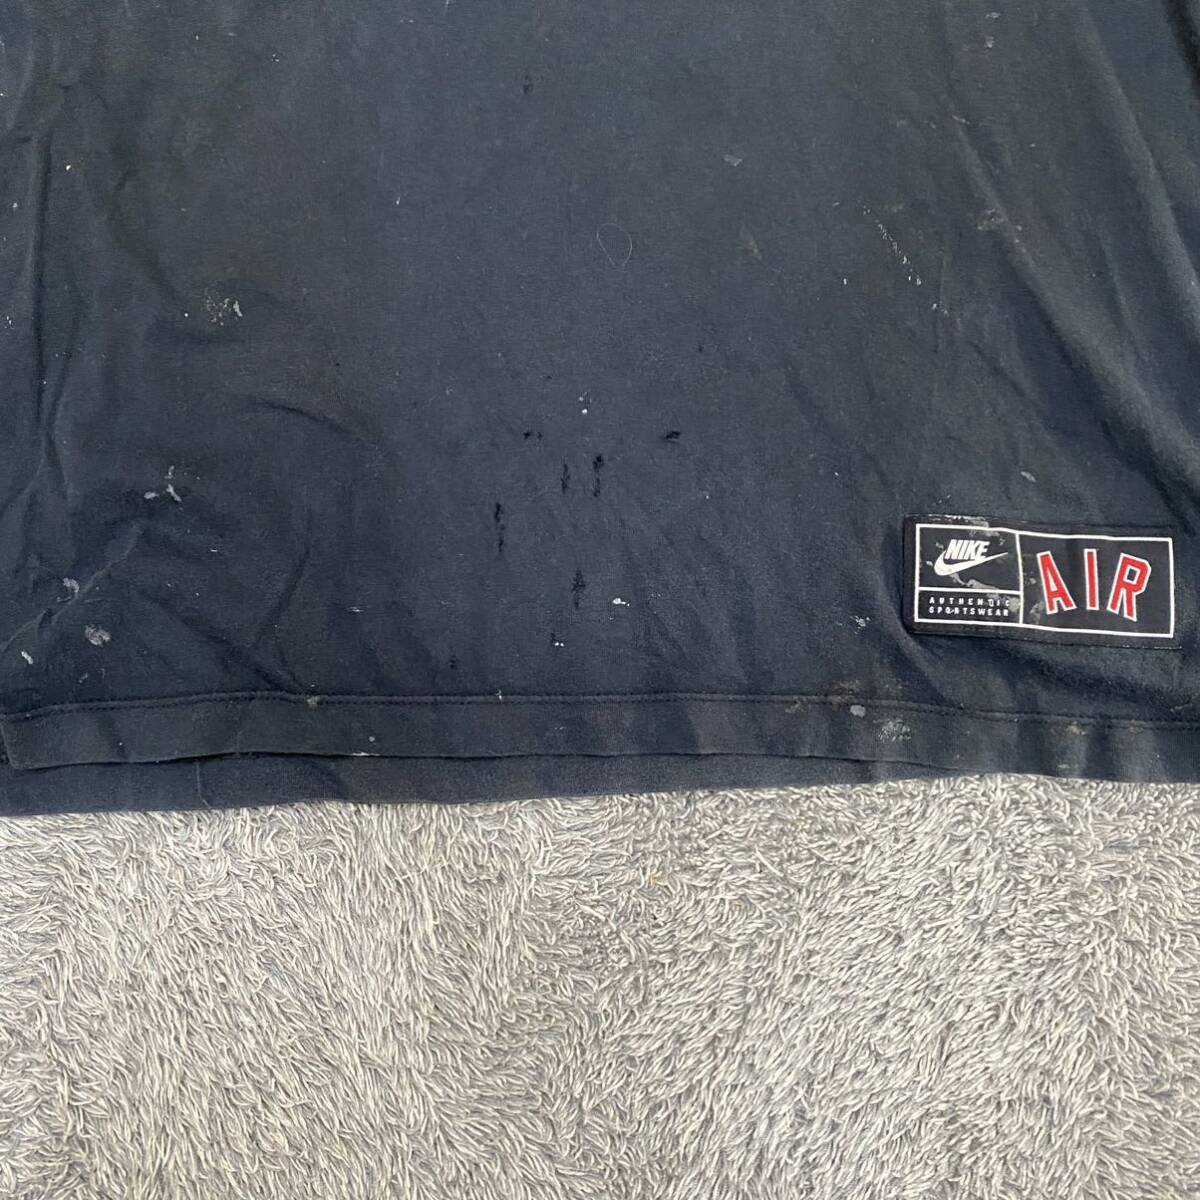 NIKE ナイキ Tシャツ 半袖カットソー サイズL ブラック 黒 メンズ トップス 最落なし （R18）の画像3